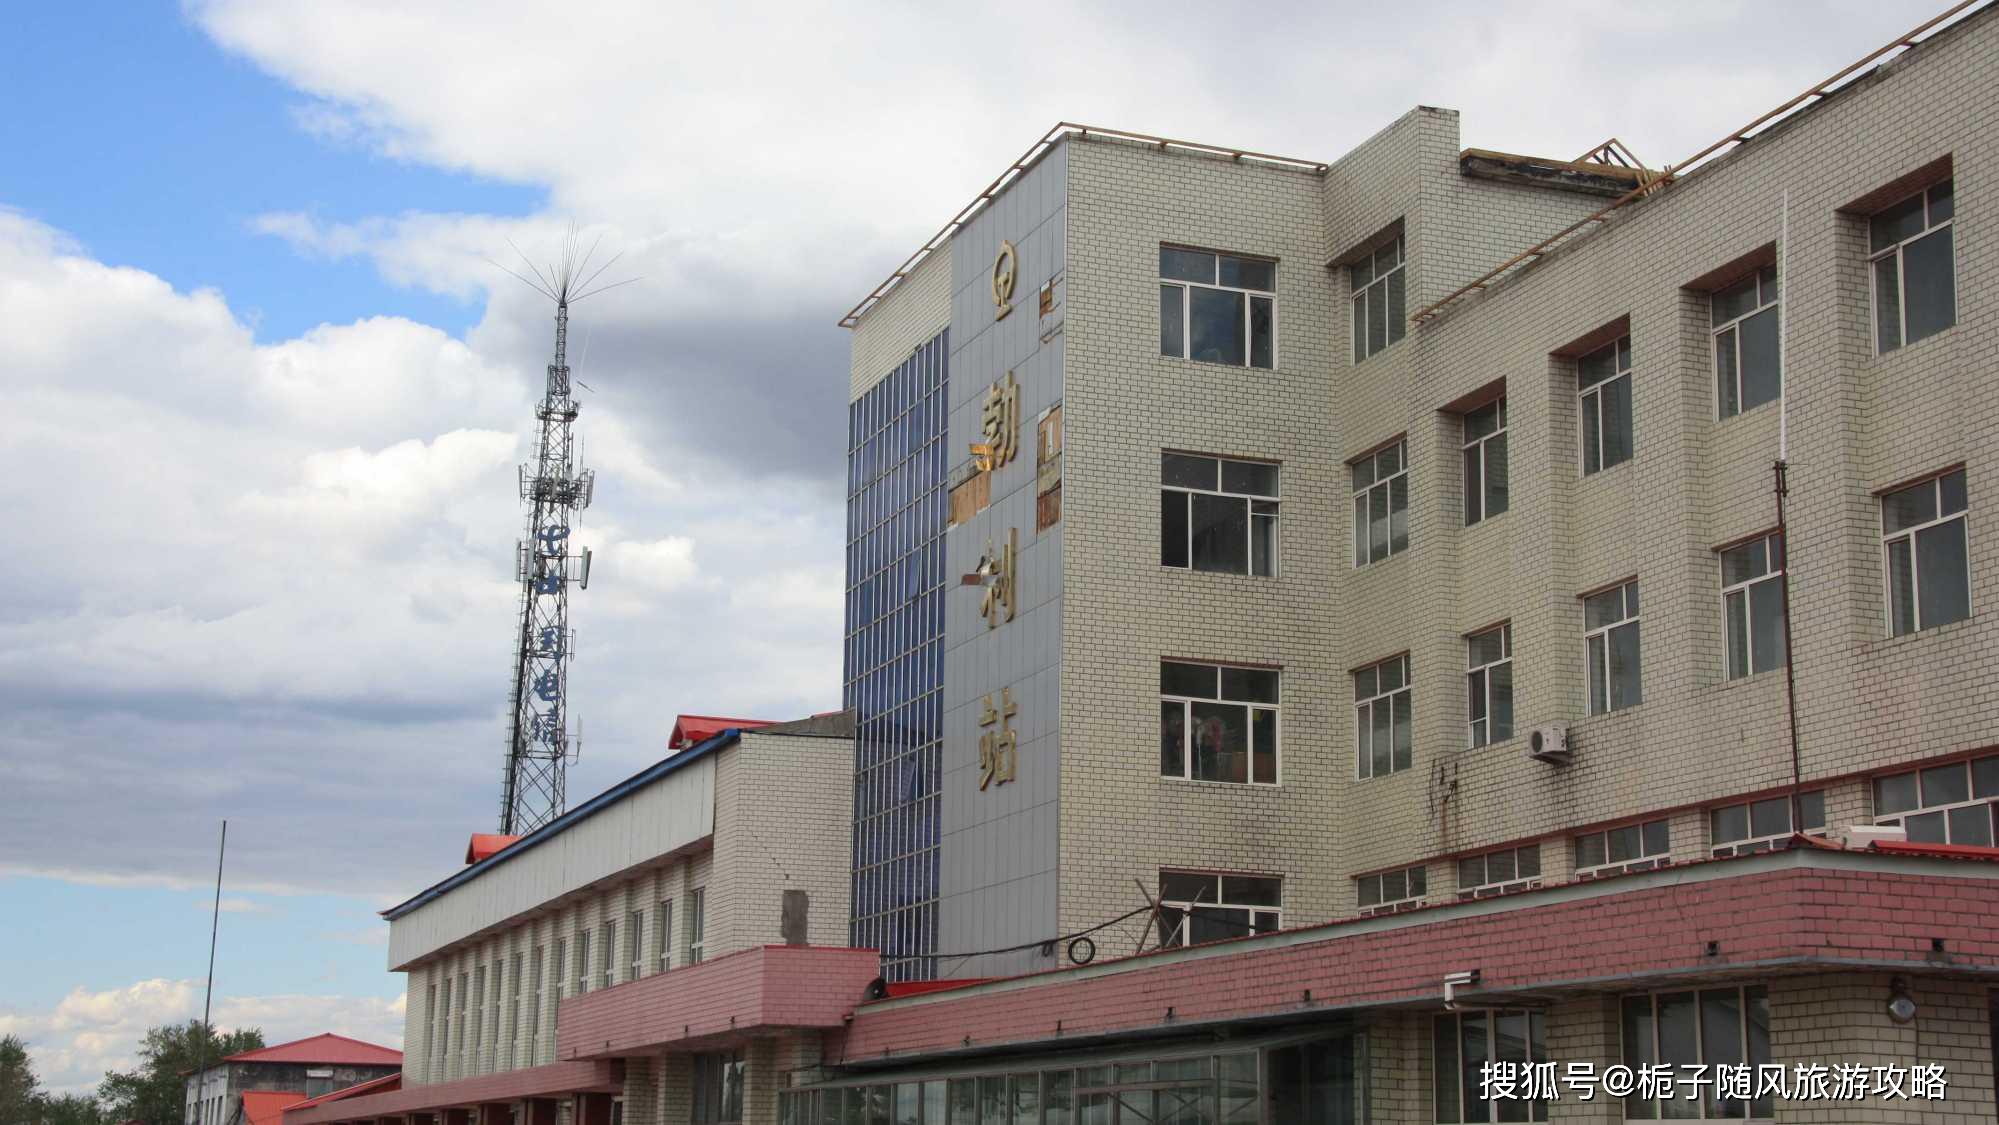 黑龙江省勃利县的门户铁路车站——勃利站